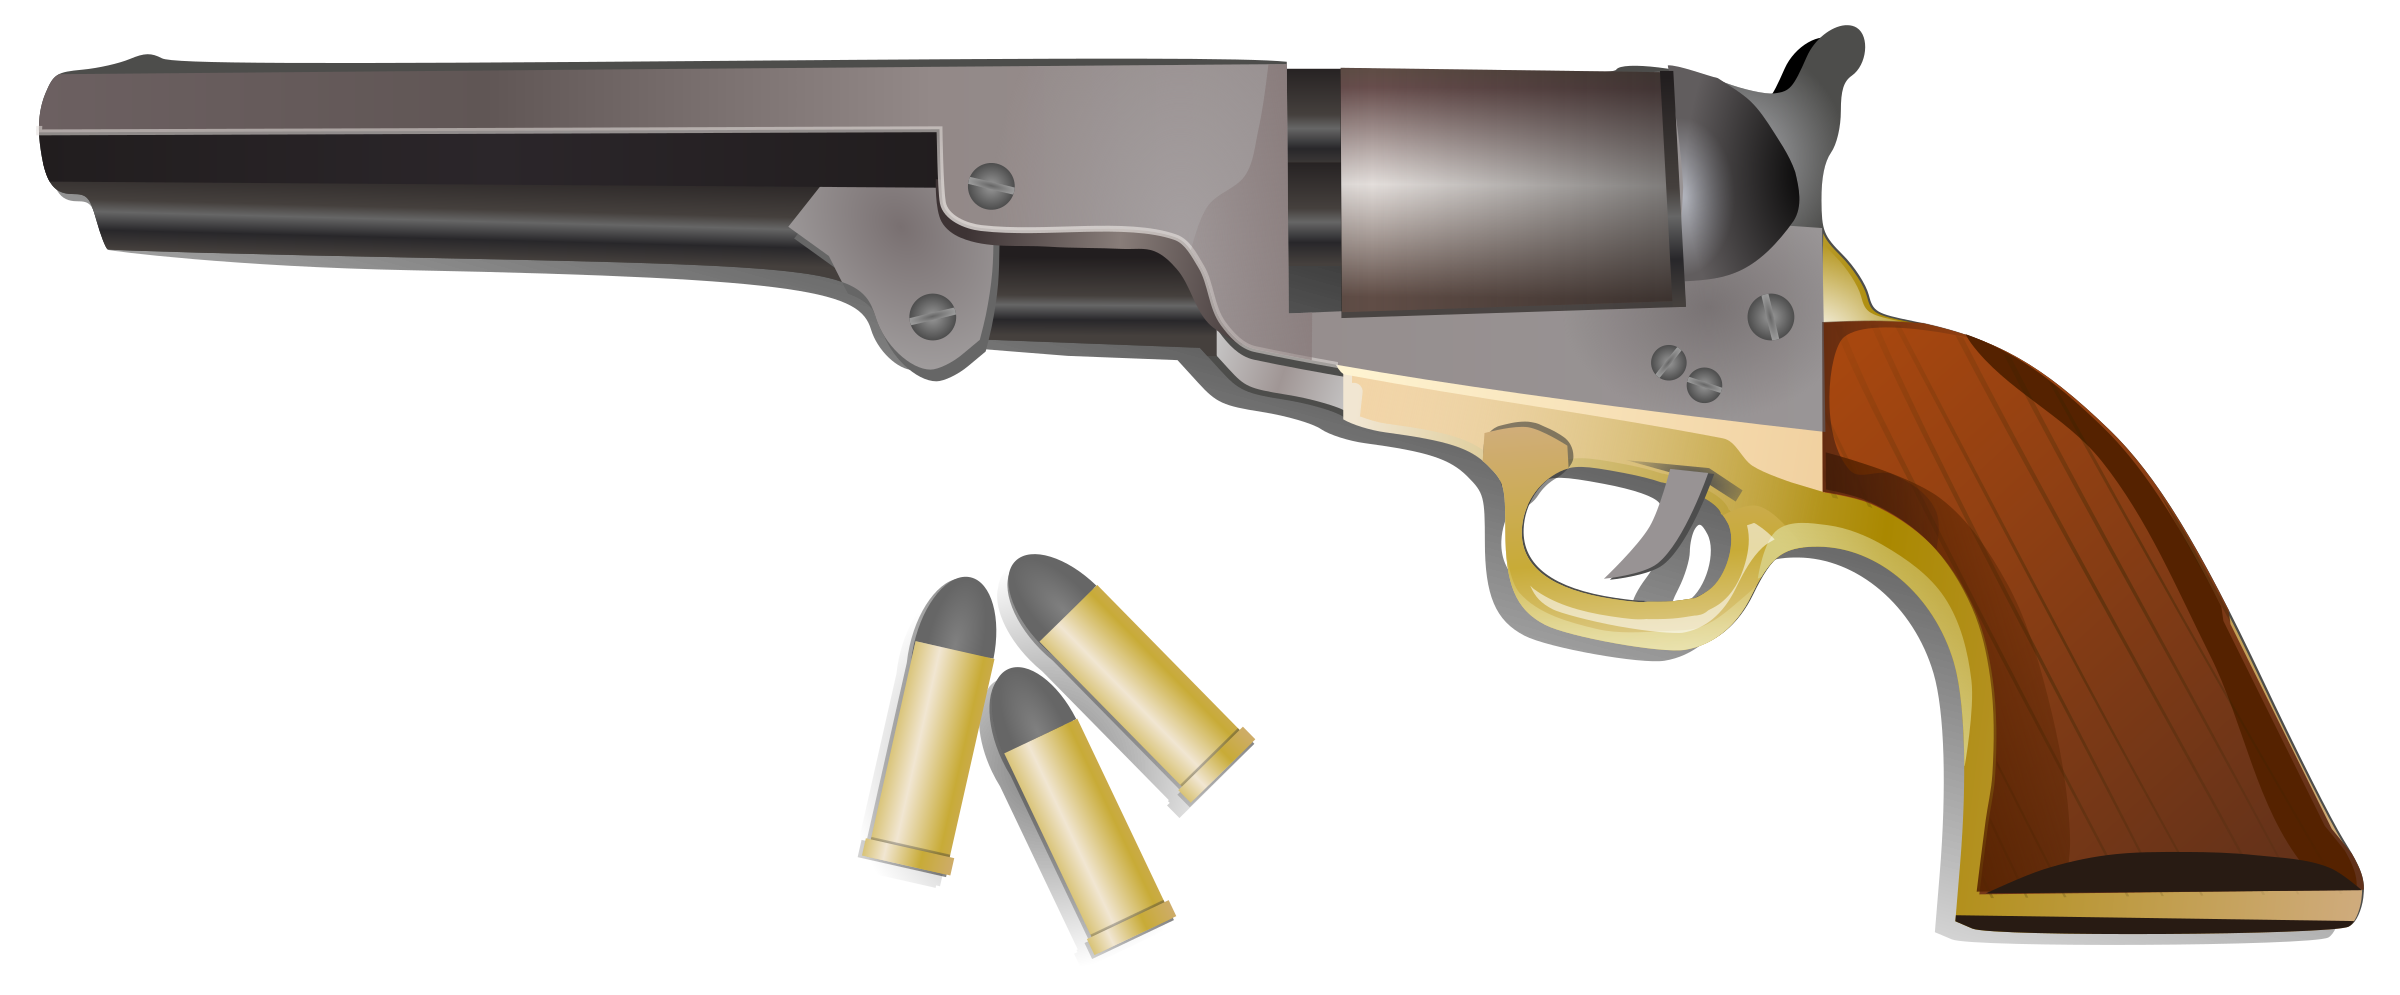 gun clipart m1911